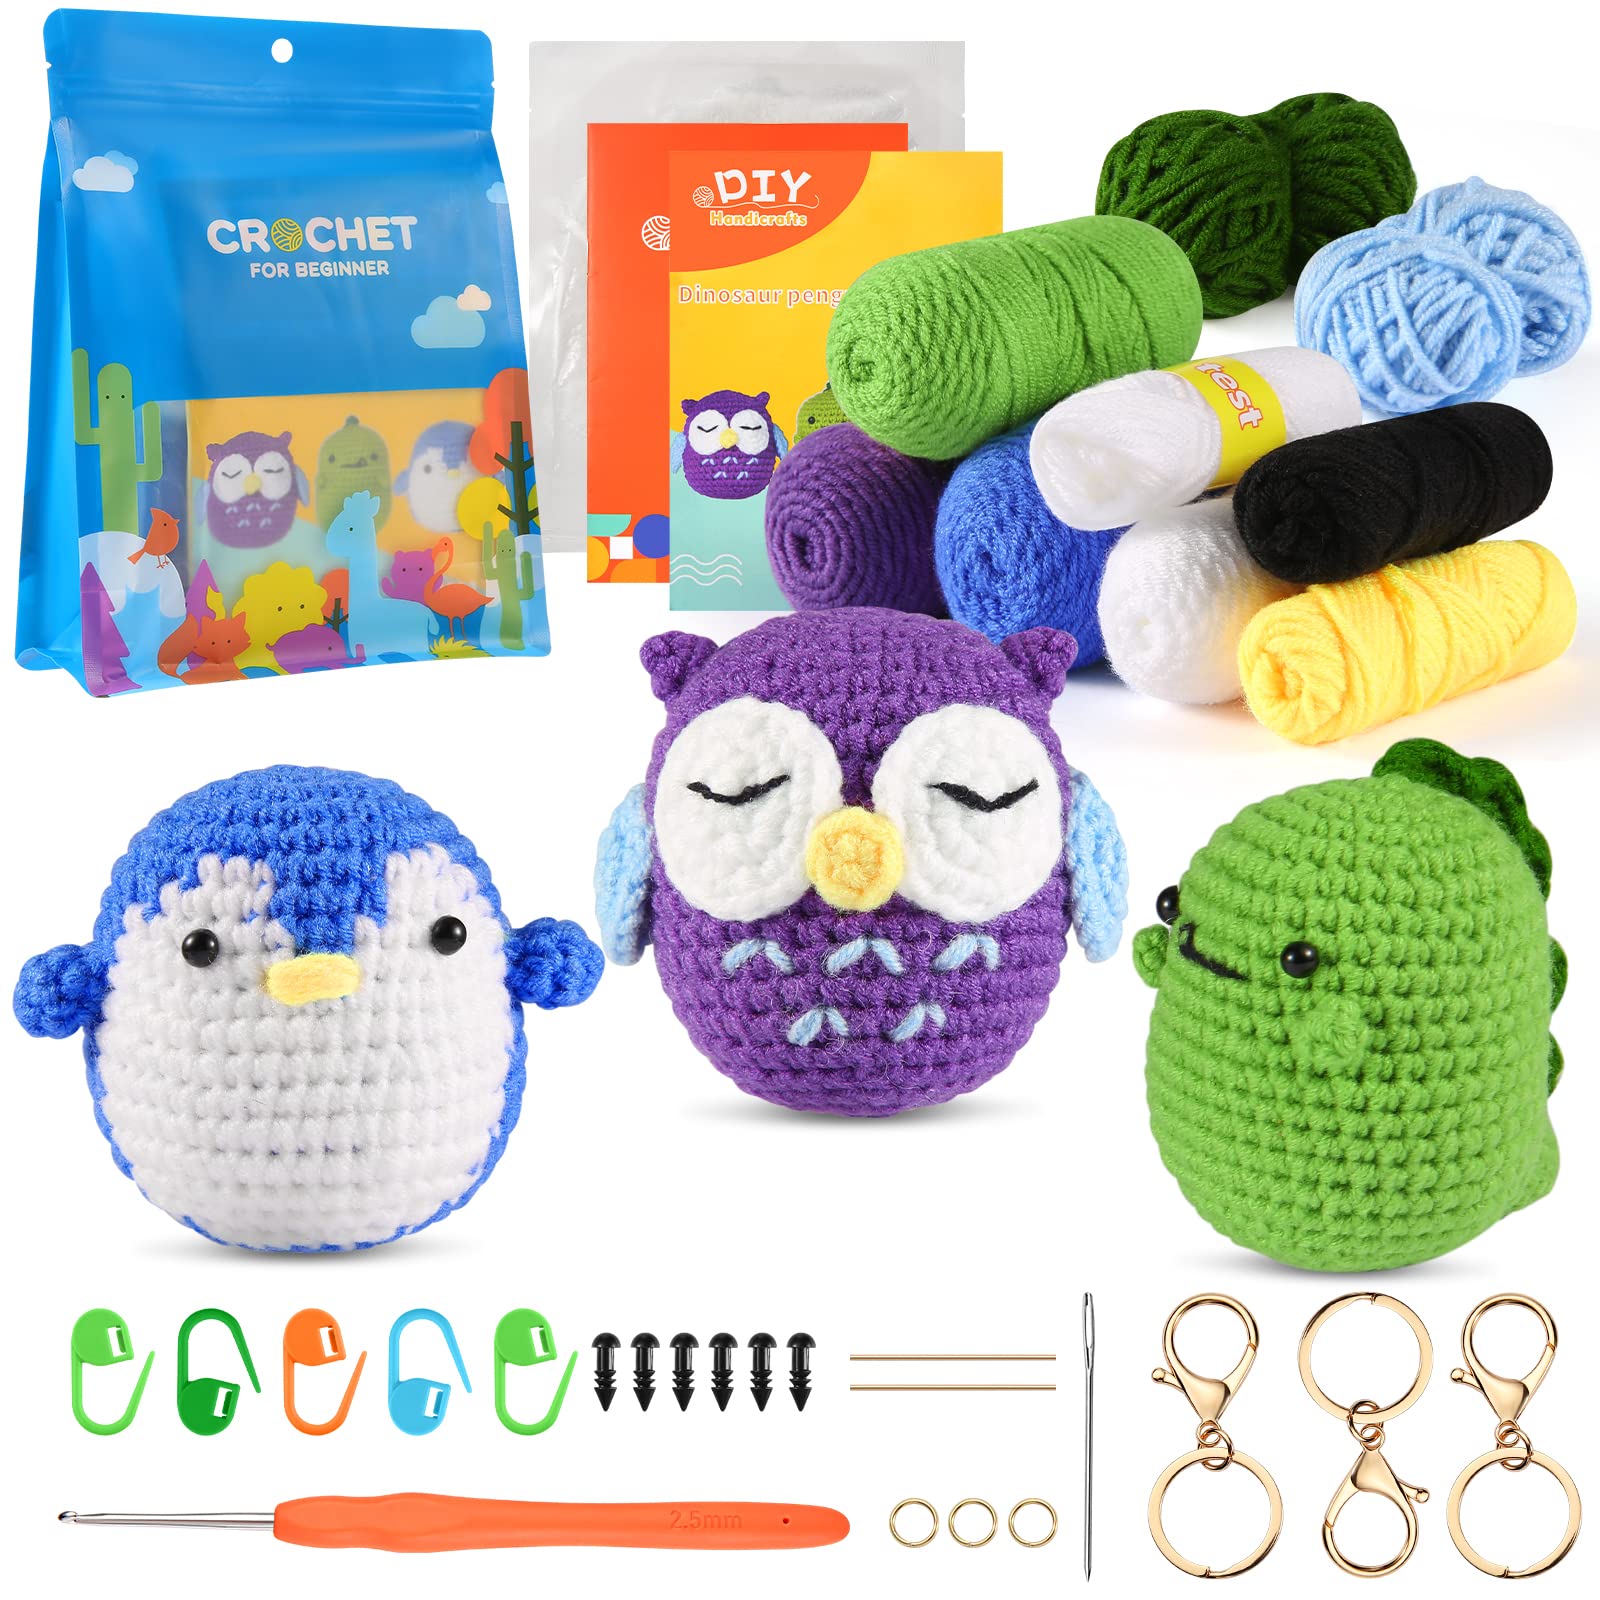 Zeitlicht Crochet Kit for Beginners, Crochet Starter Kit for